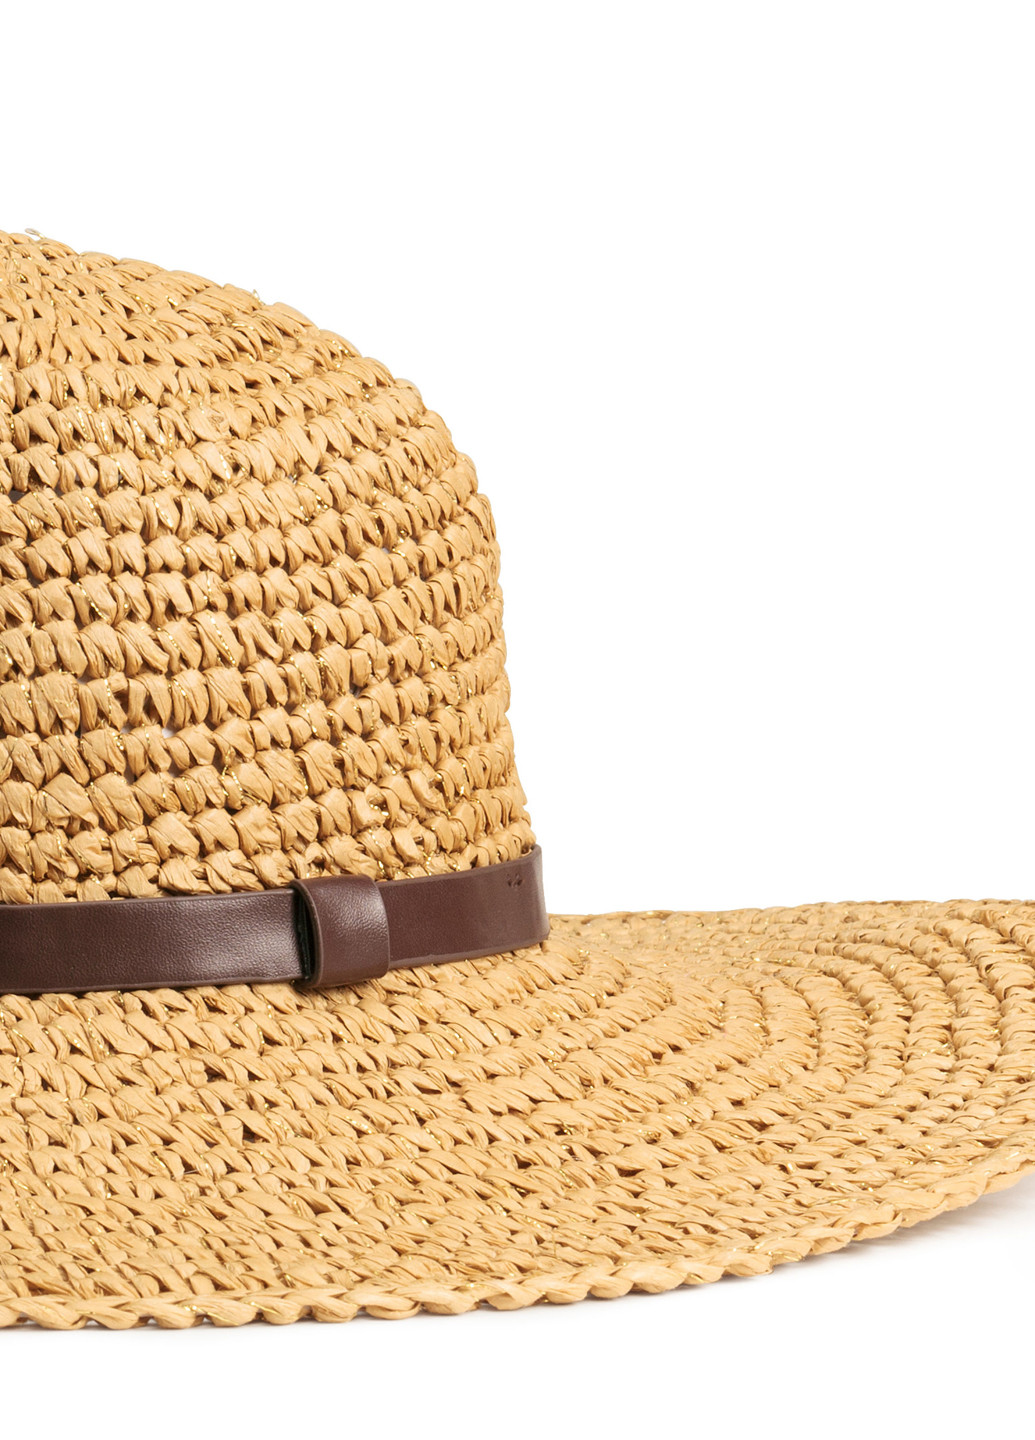 Шляпа H&M золотая пляжная